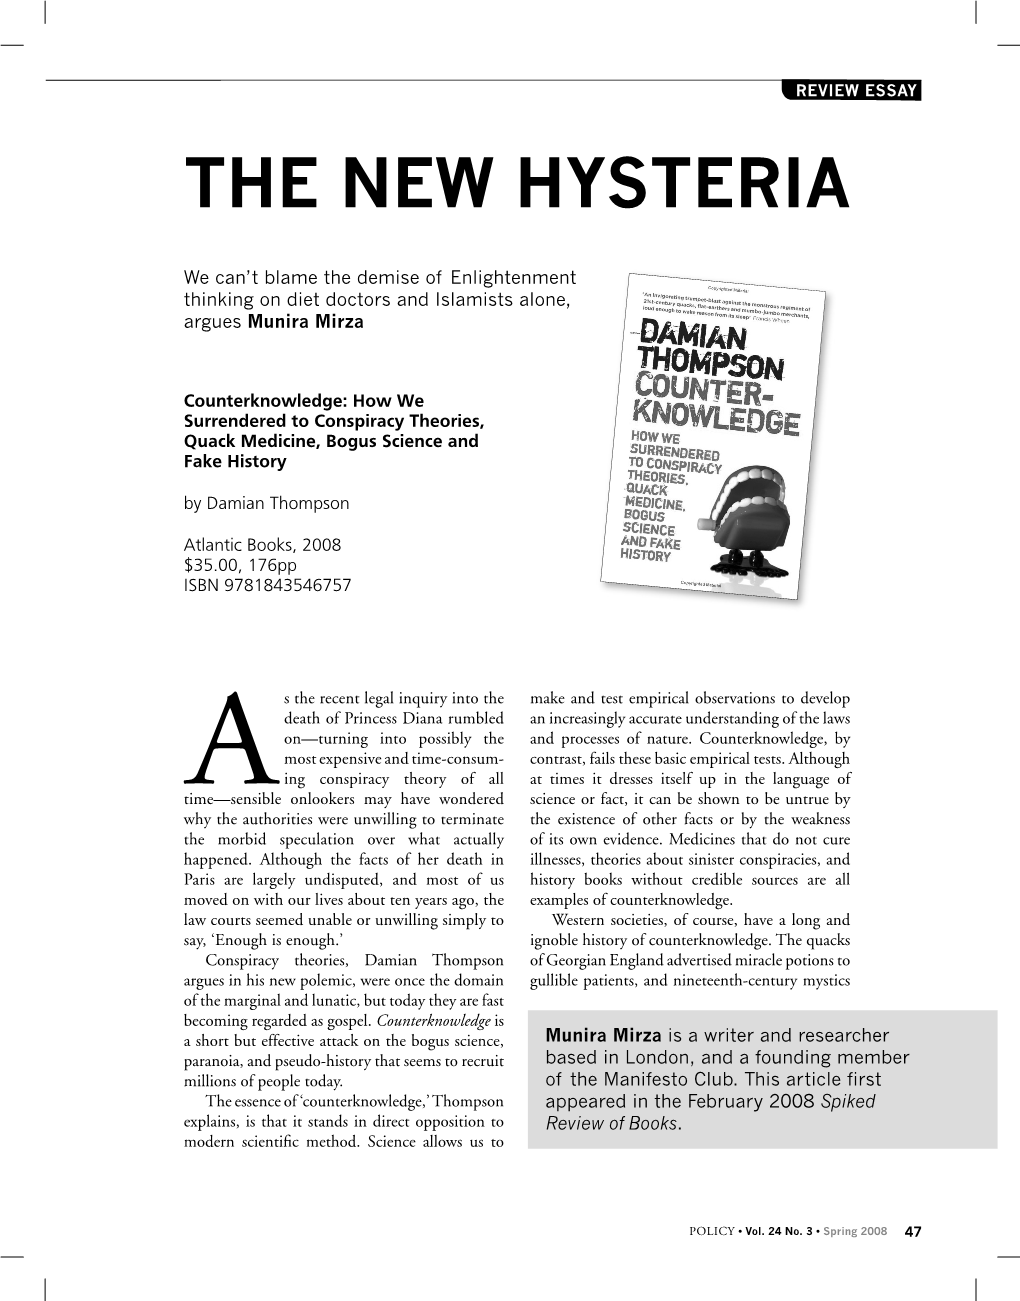 The New Hysteria